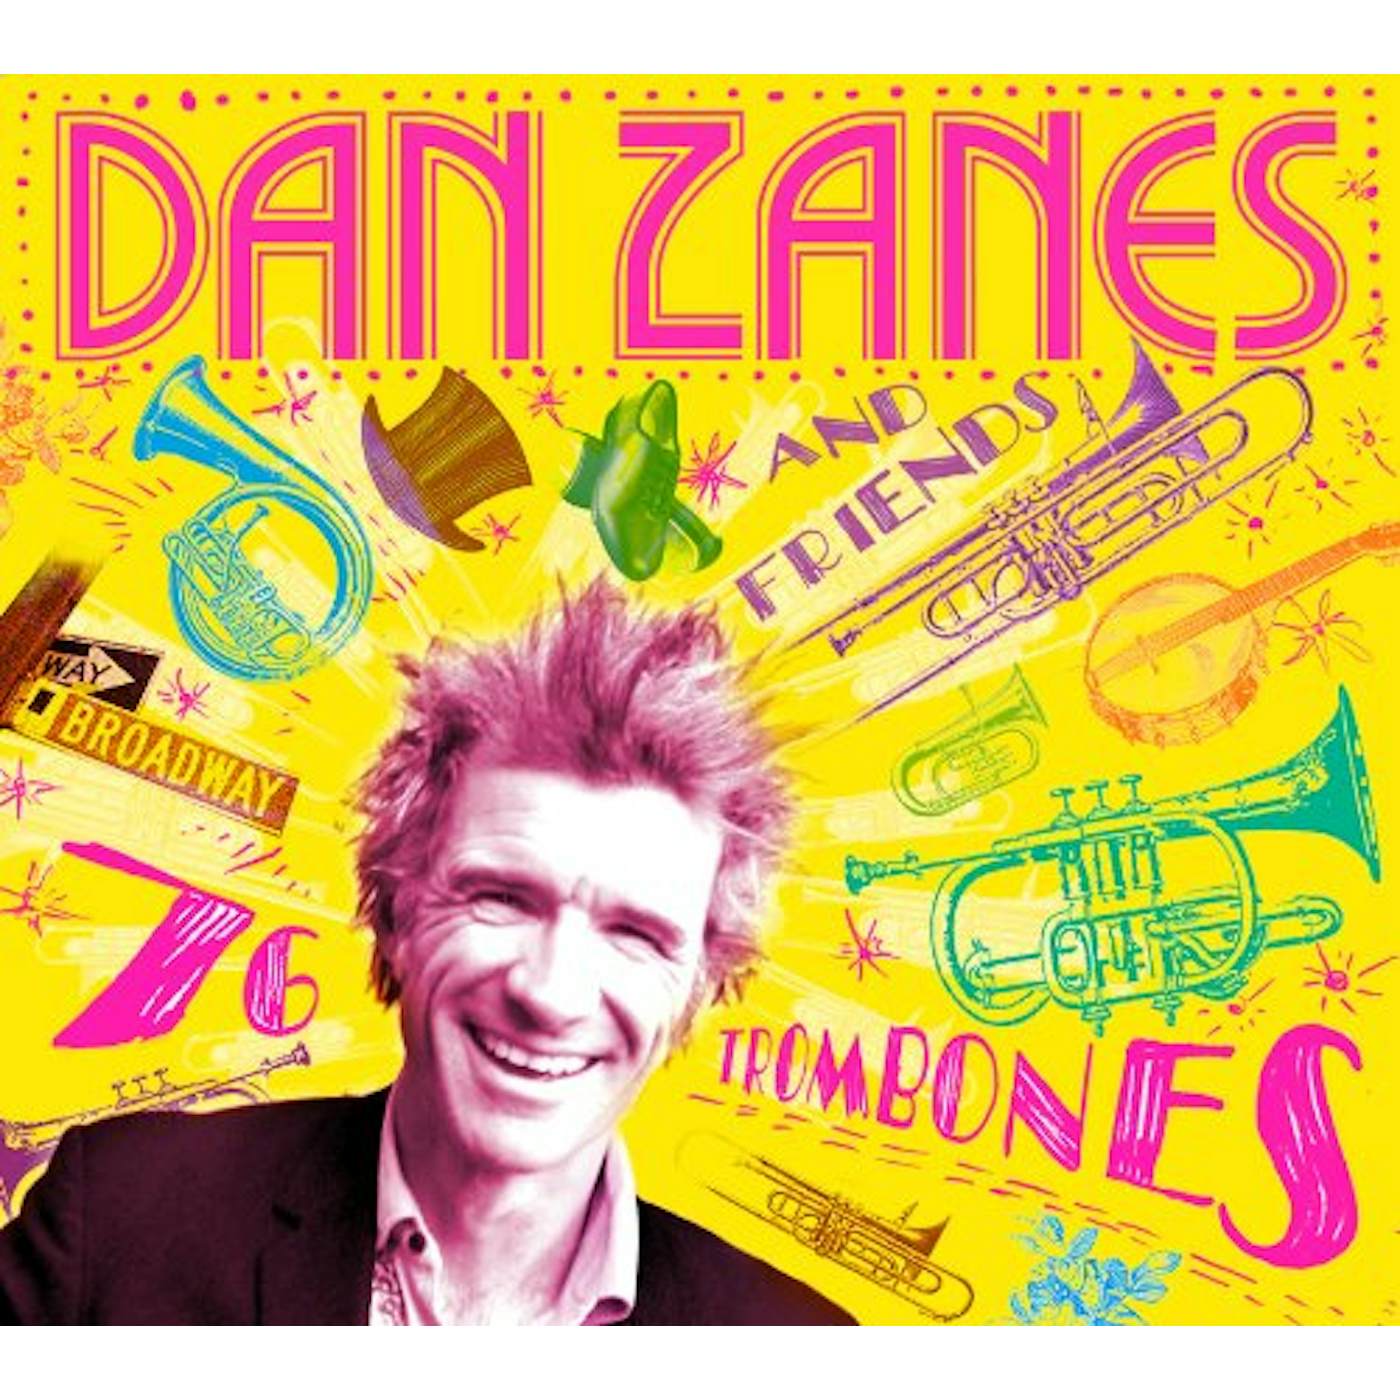 Dan Zanes & Friends 76 TROMBONES CD